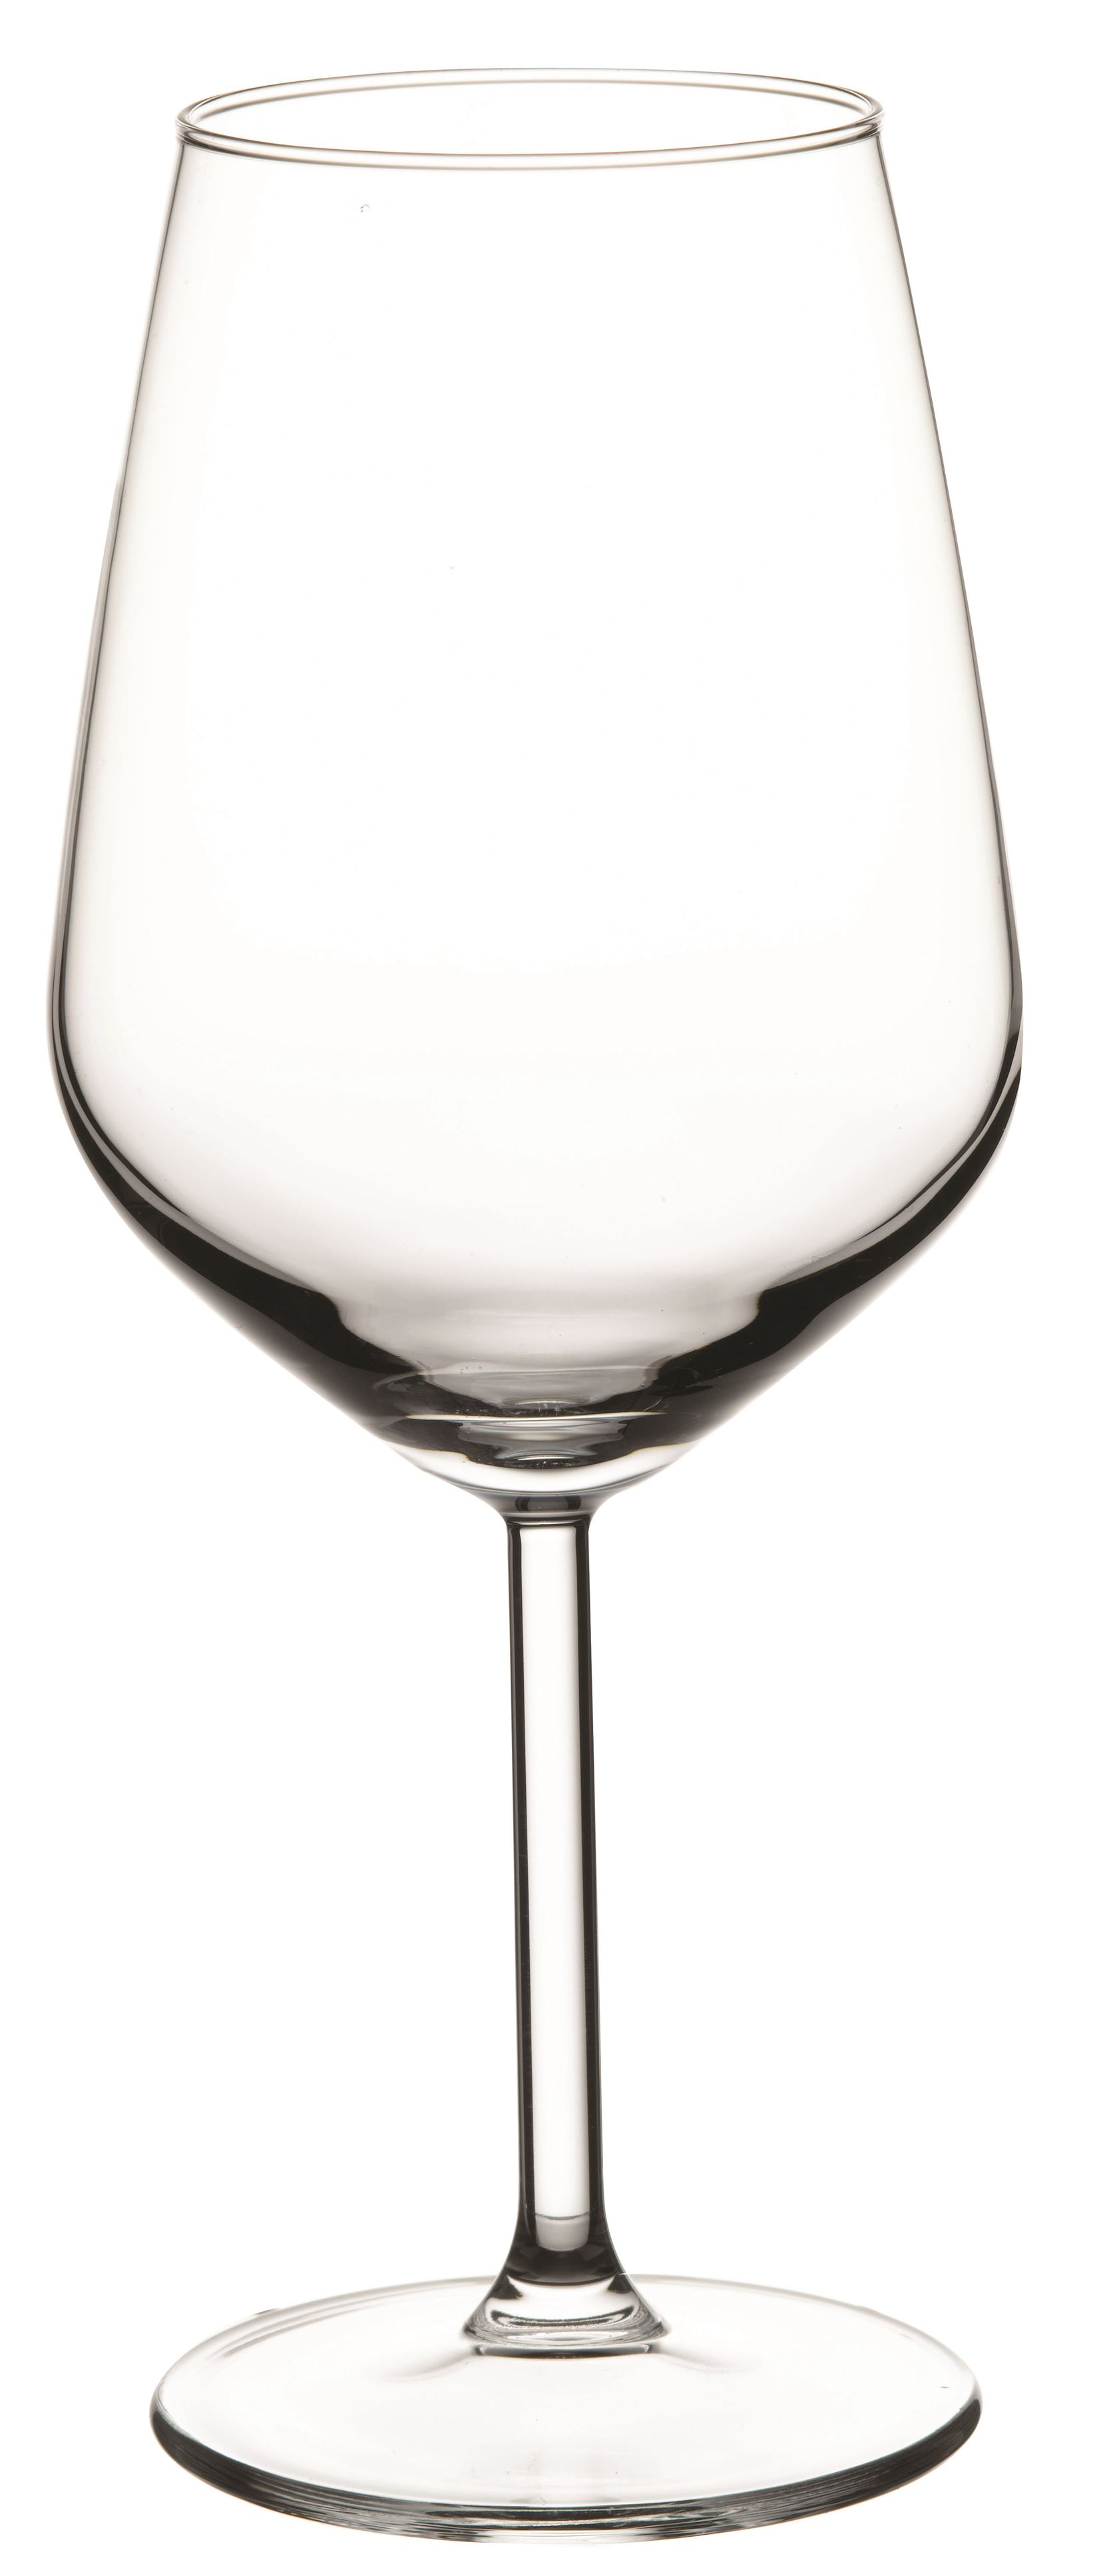 Weinglas Allegra, 0,49 ltr., Glas